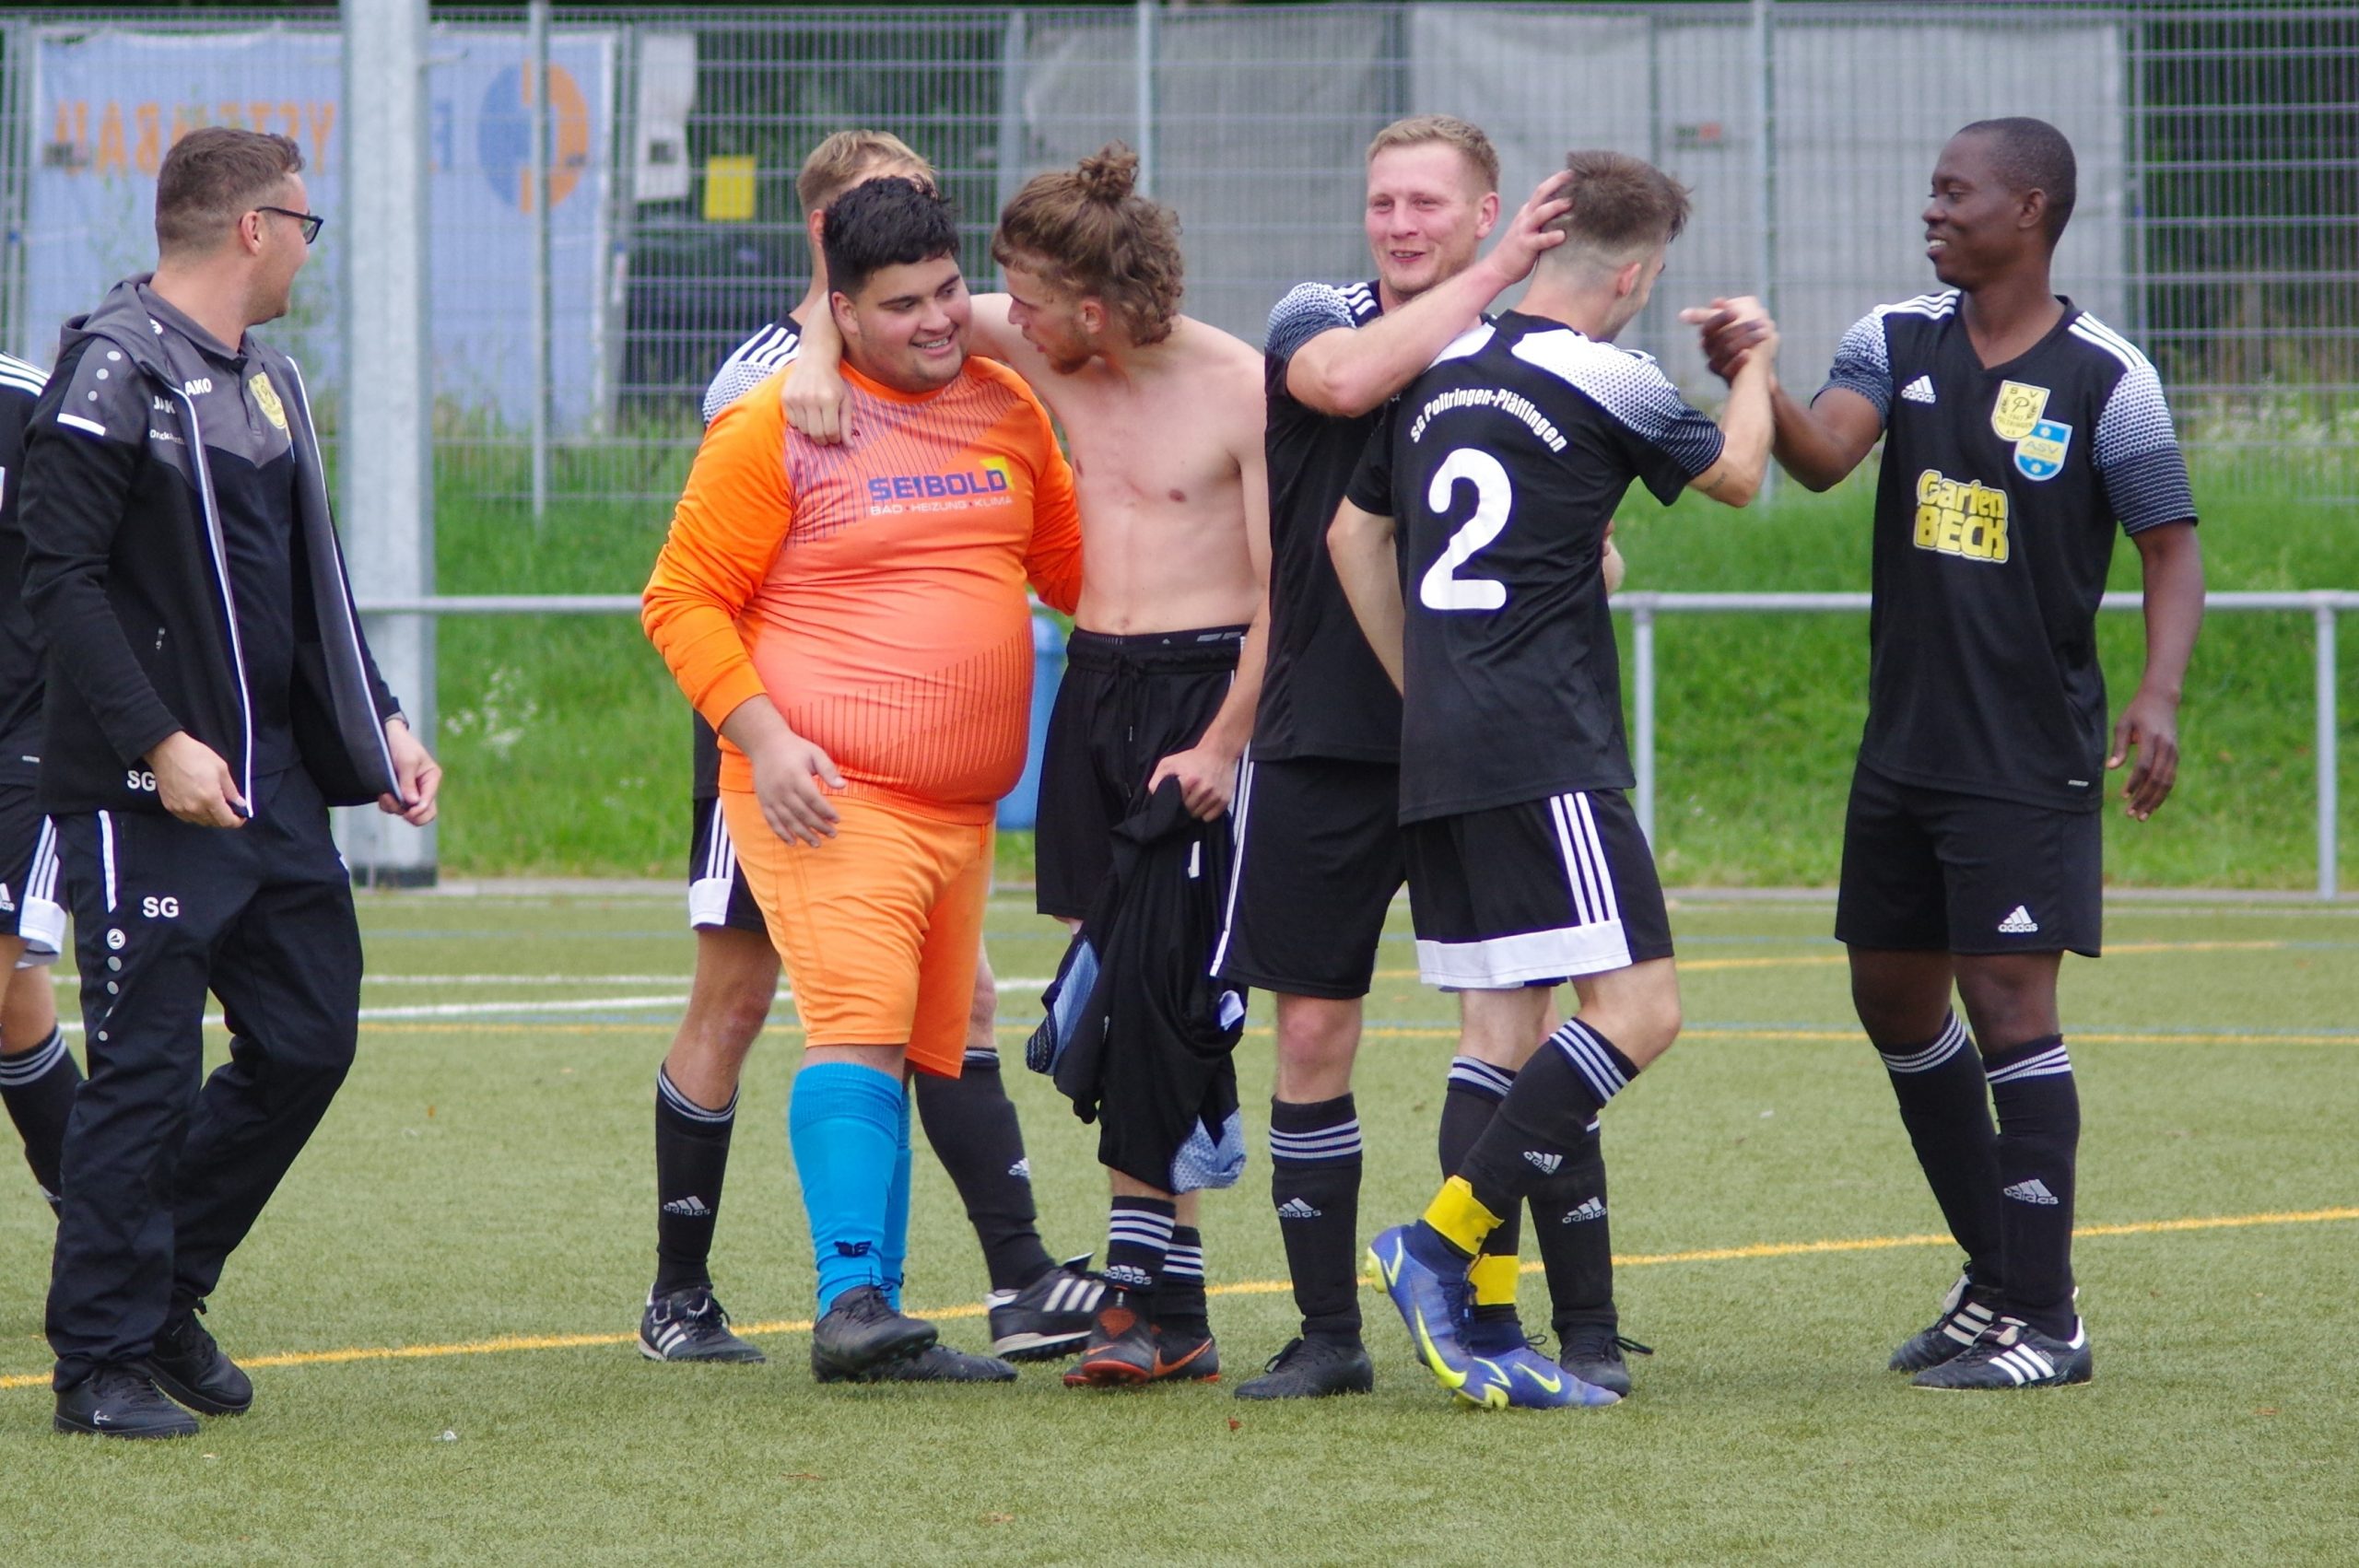 Spielbericht Kreisliga A3 – 2. Spieltag: Fussball-Krimi mit Happy End beim Gastspiel in Lustnau